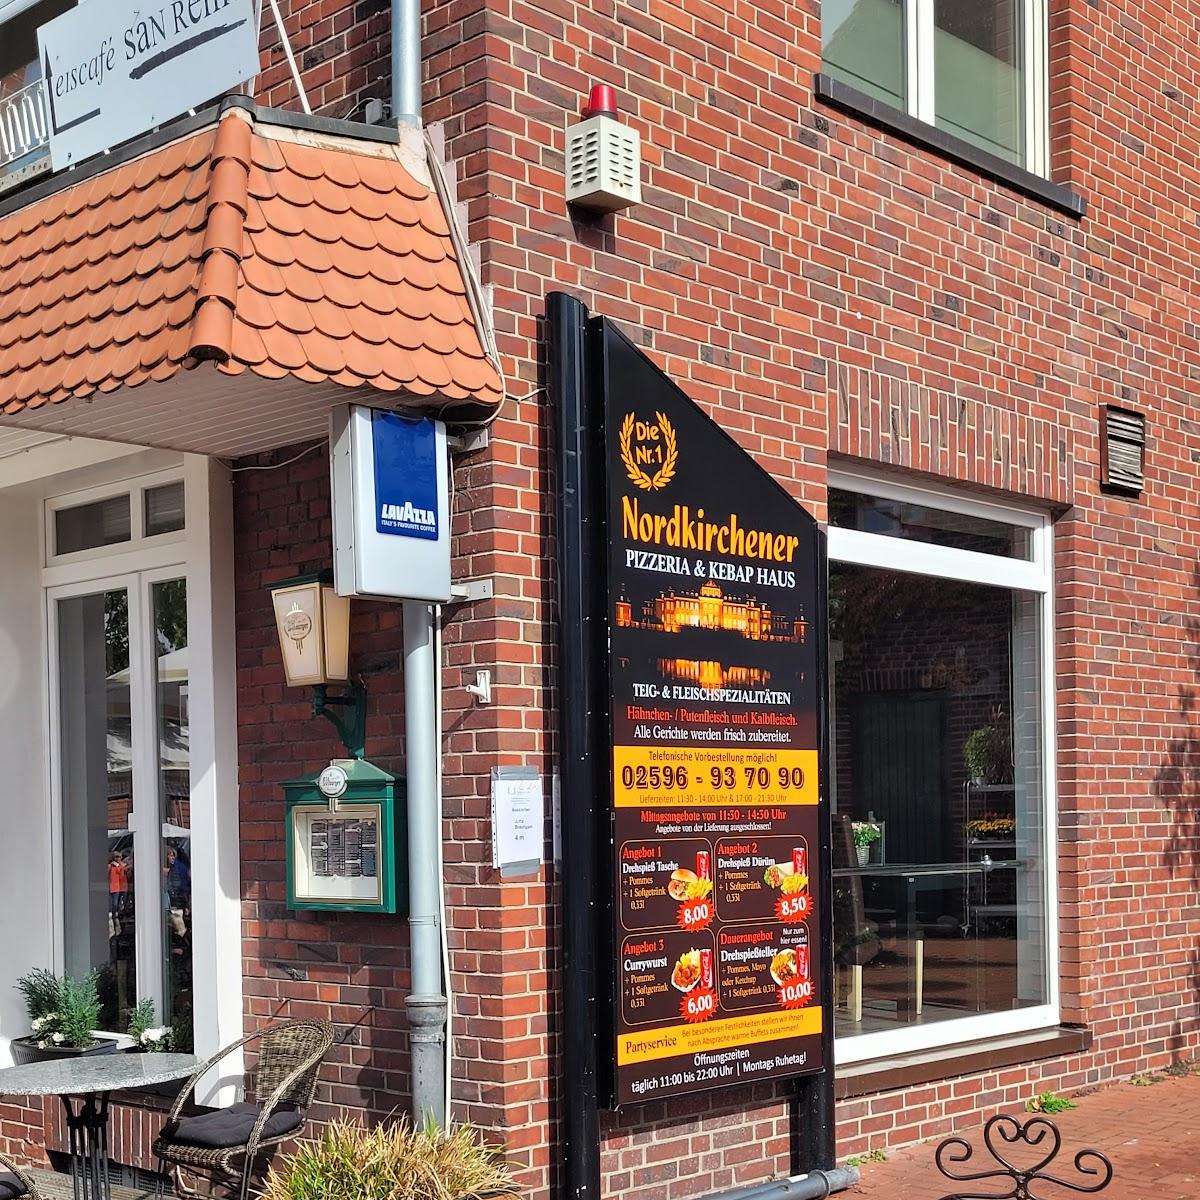 Restaurant "er Pizzeria & Kebab Haus" in Nordkirchen